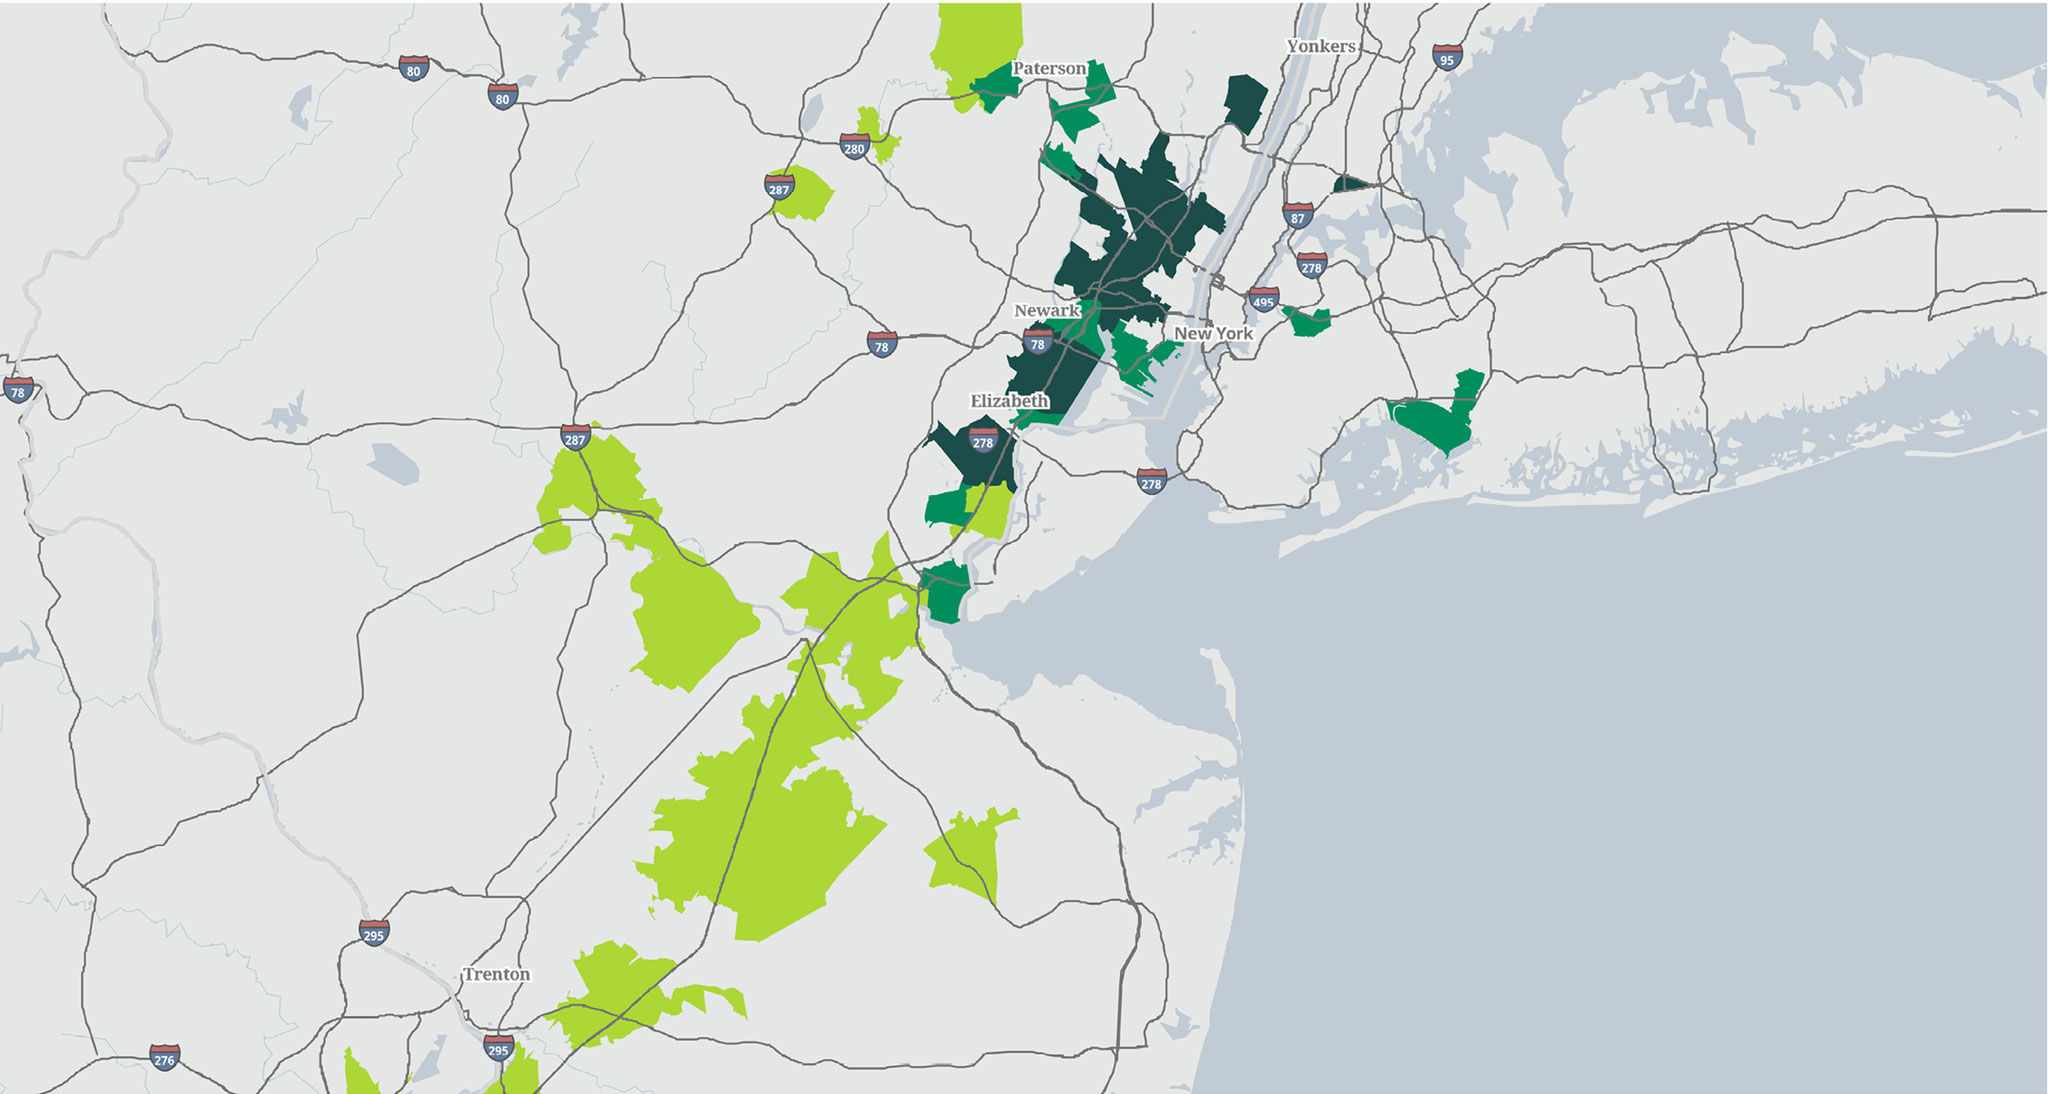 Categorization map - NJ/NYC